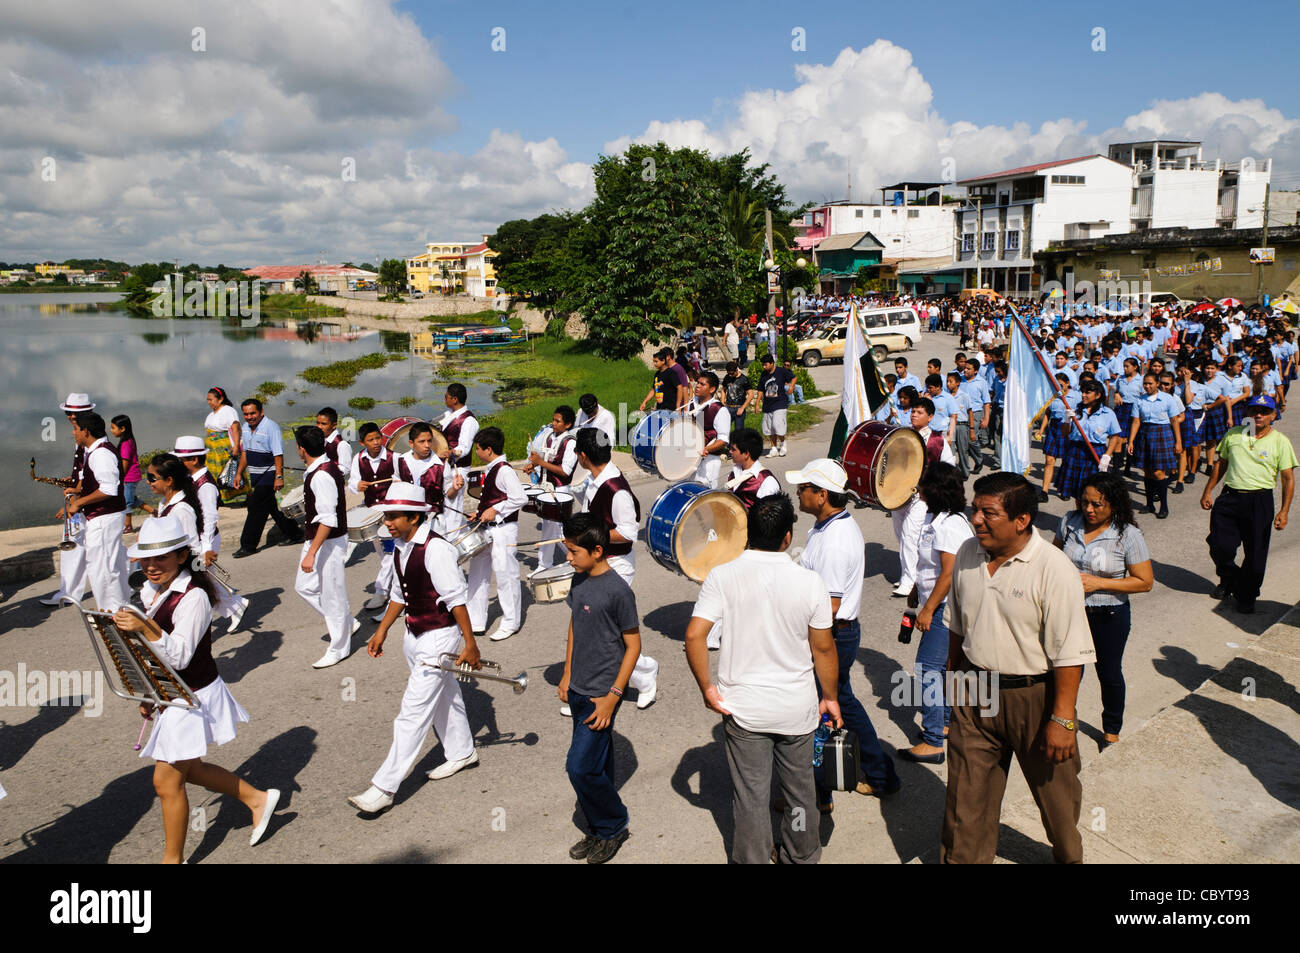 FLORES, Guatemala - Una Marching Band realiza como parte de las celebraciones del Día de la Independencia de Guatemala (15 de septiembre de 2011). Grupos de escolares desfilan en una procesión por las calles de Flores, comenzando en el Parque Central, paseos por la ciudad, y el cruce de la calzada en Santa Elena. Foto de stock